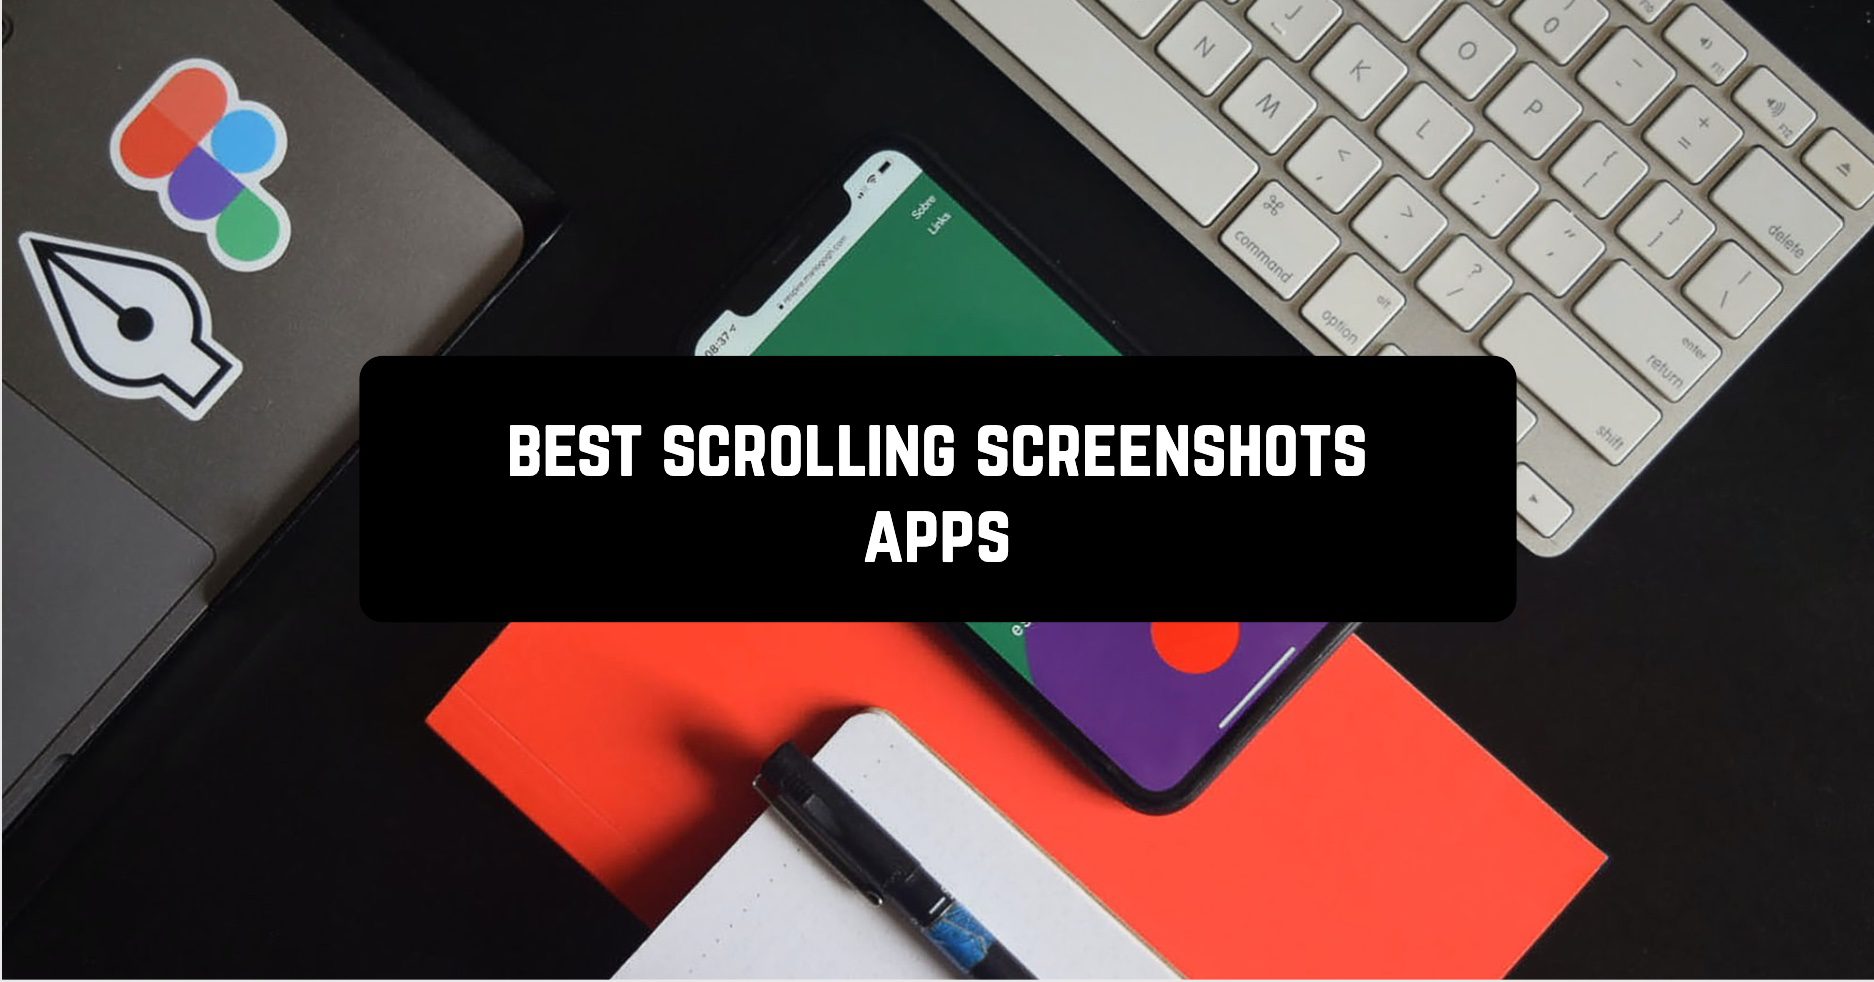 Best scrolling screenshots apps